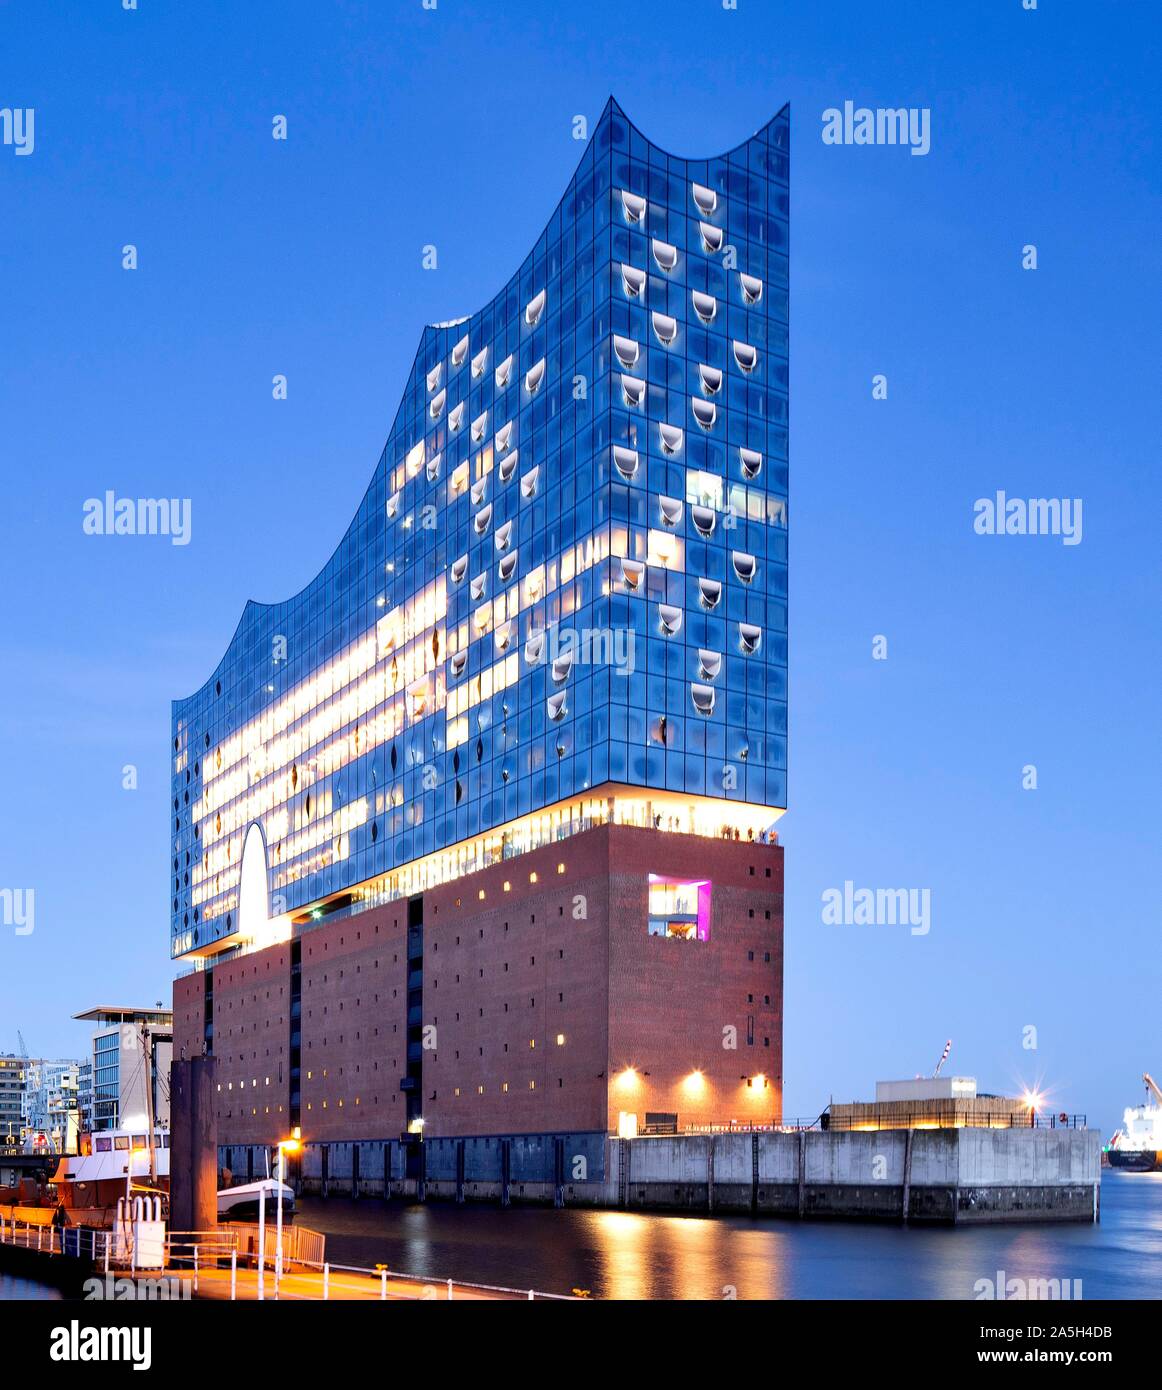 Beleuchtete Elbphilharmonie während der Blauen Stunde, Speicherstadt, Kaiserkai, Hafencity, Hamburg, Deutschland Stockfoto